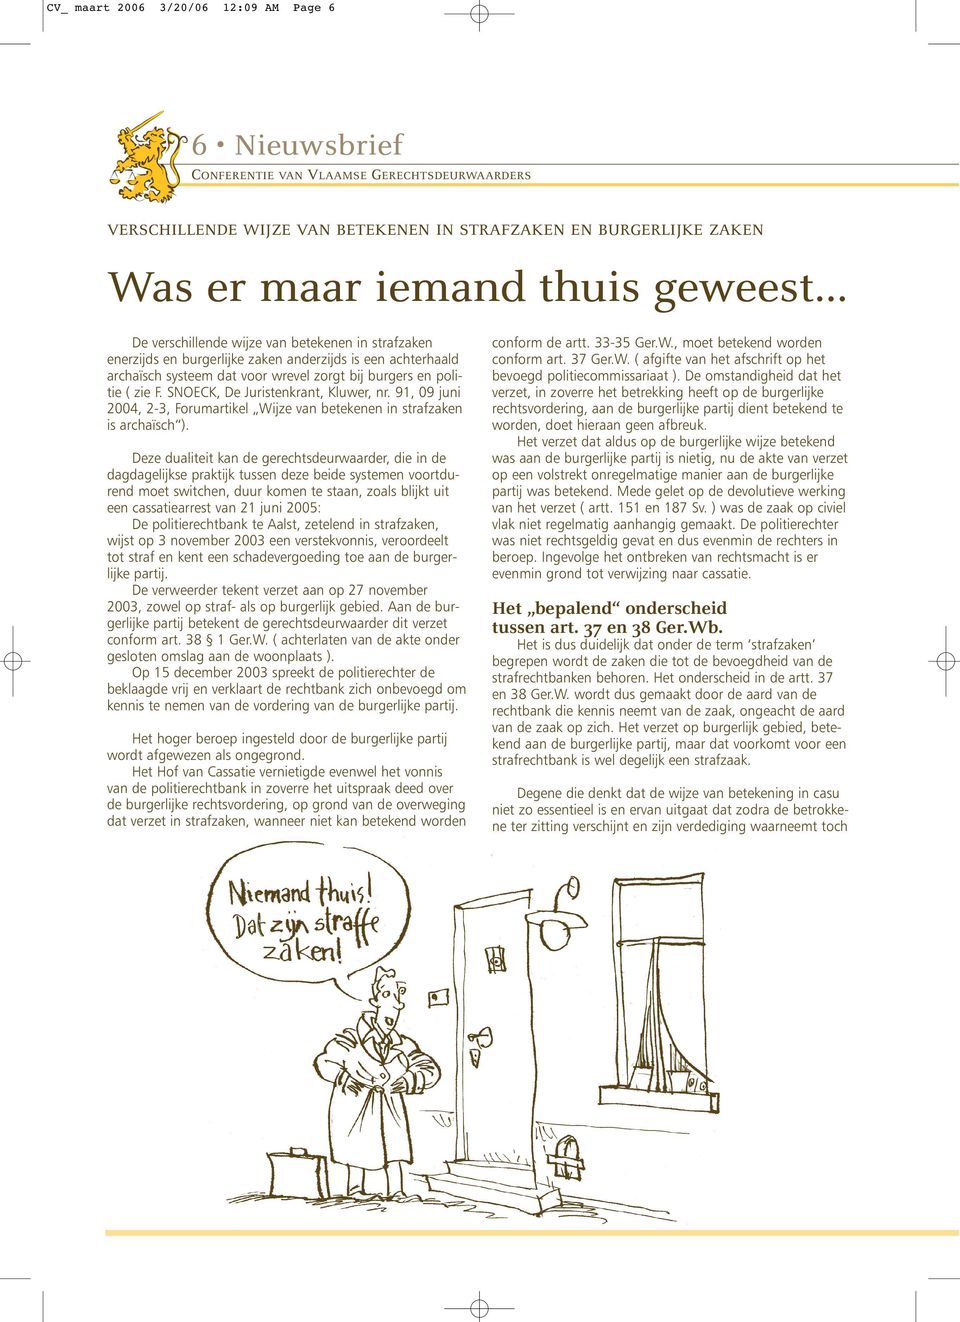 SNOECK, De Juristenkrant, Kluwer, nr. 91, 09 juni 2004, 2-3, Forumartikel Wijze van betekenen in strafzaken is archaïsch ).